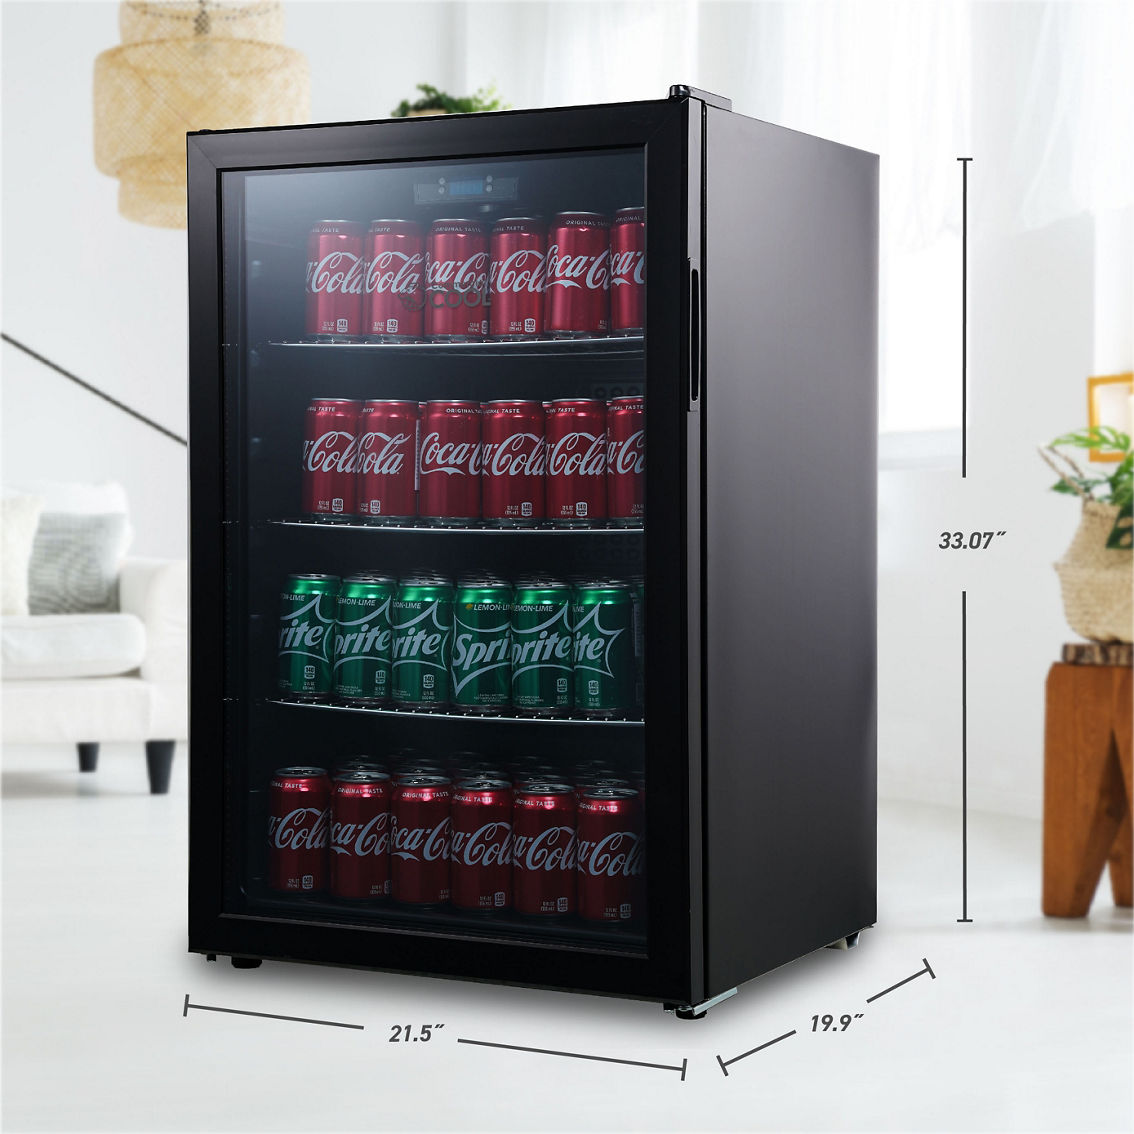 Commercial Cool 4.4 cu. ft. Digital Beverage Cooler - Image 2 of 7